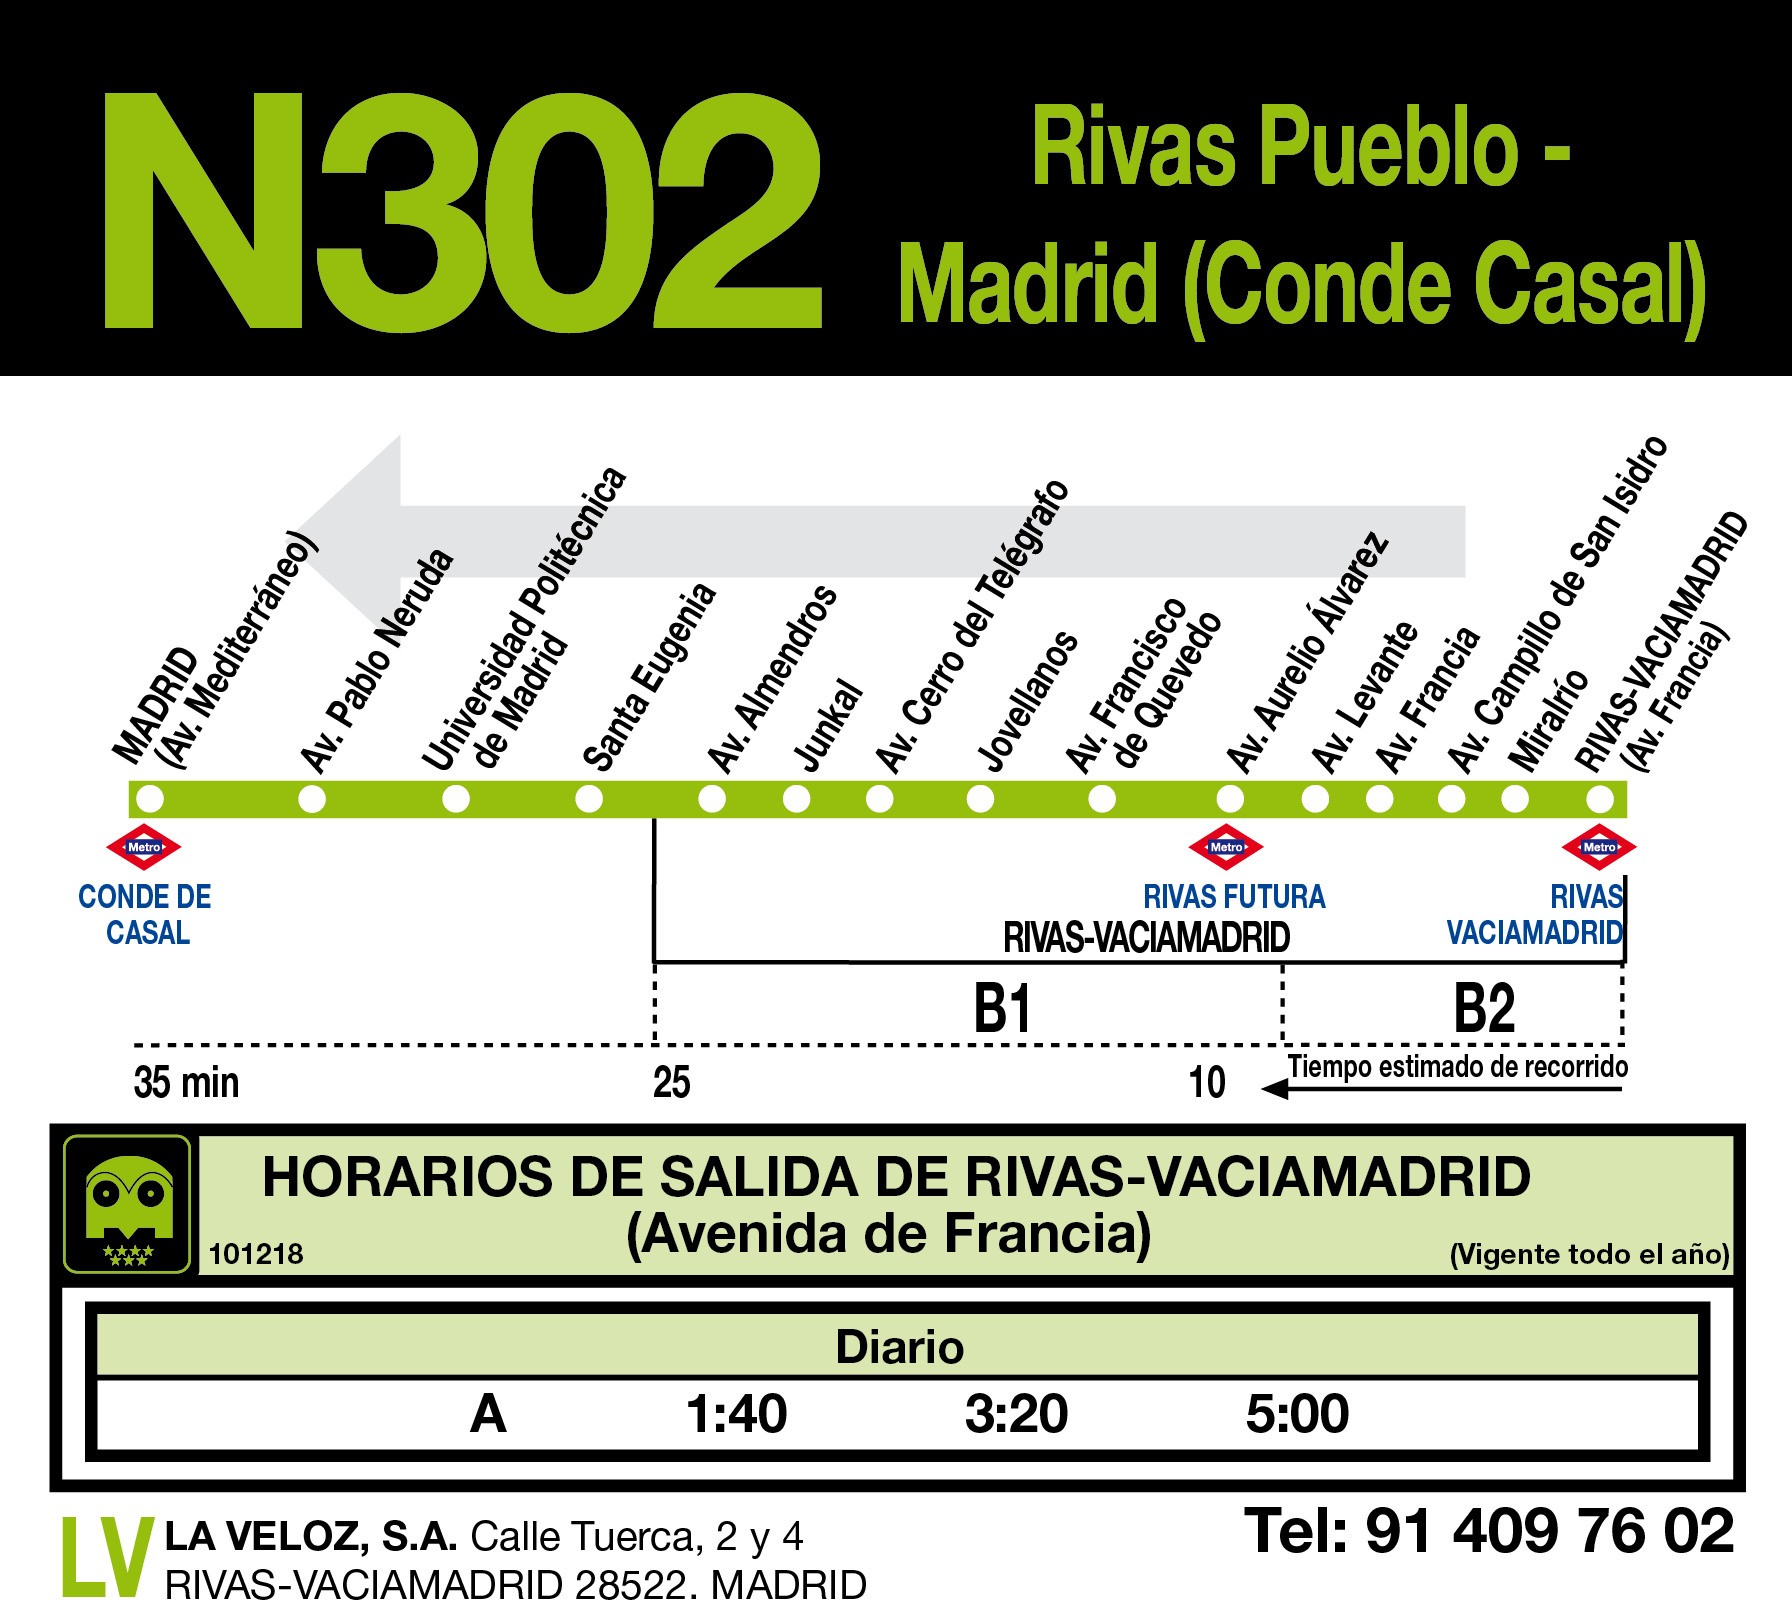 Madrid (C.Casal) - Rivas Pueblo